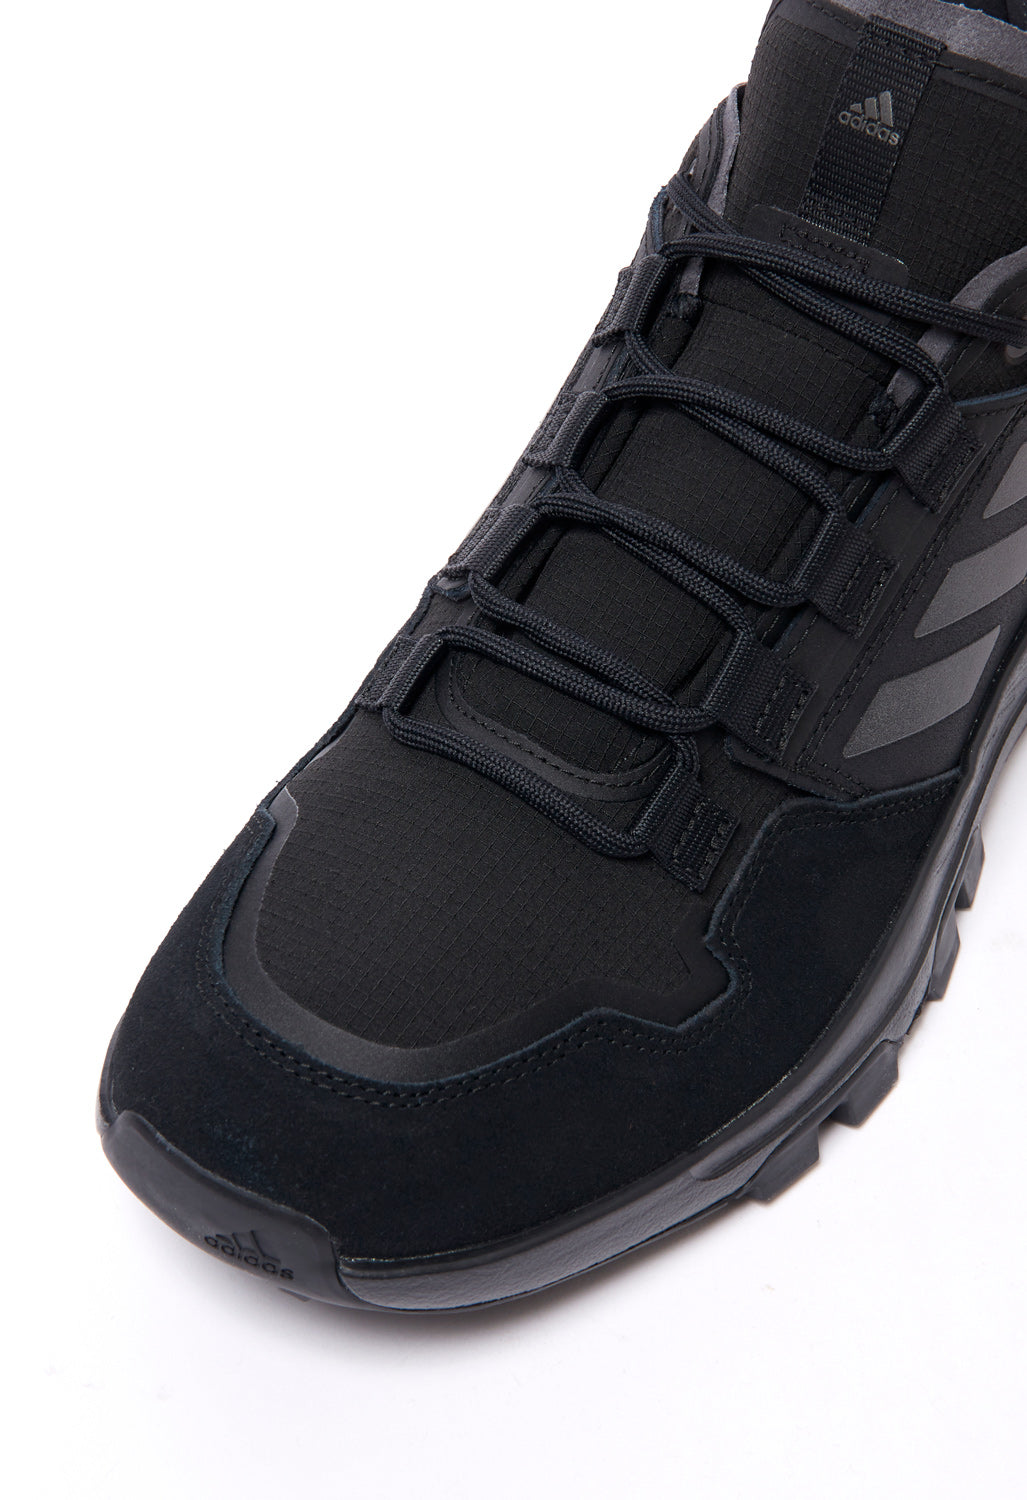 adidas TERREX Hikster Men's Shoes - Core Black/Core Black/Core Black